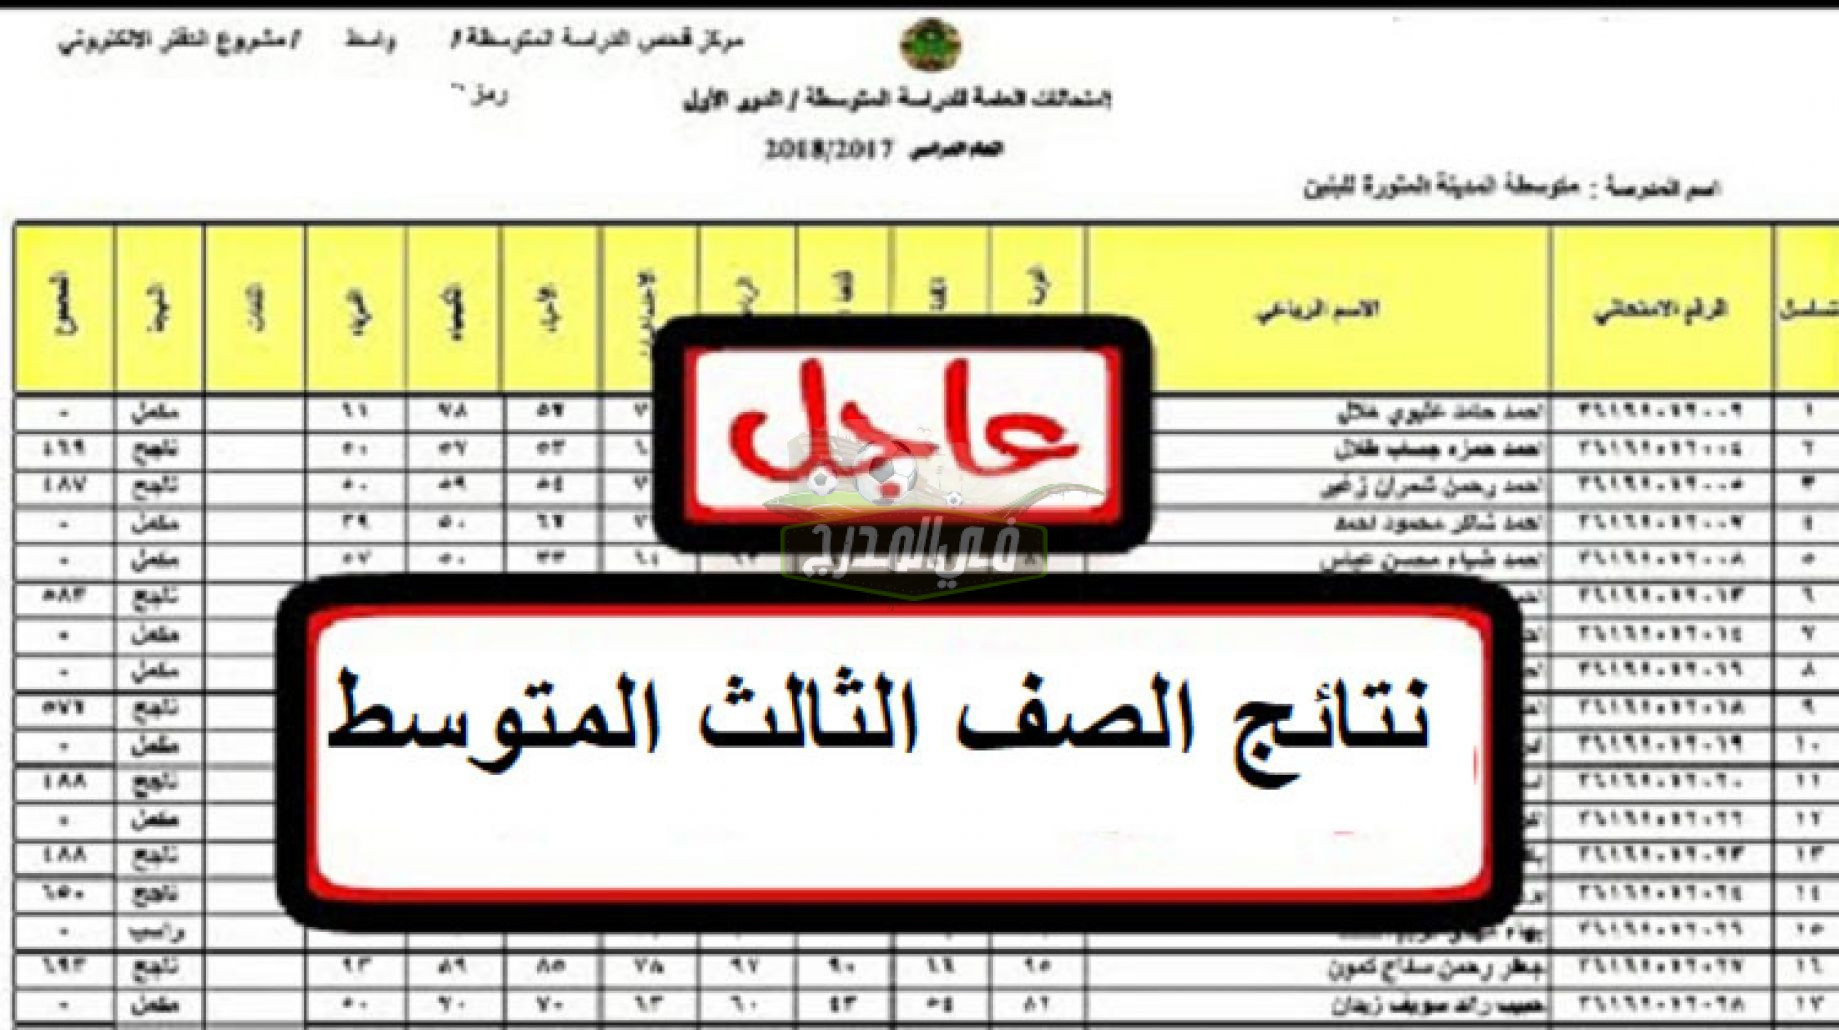 الآن رابط الاستعلام عن نتيجة الصف الثالث المتوسط 2021 بالعراق عبر موقع وزارة التربية العراقية